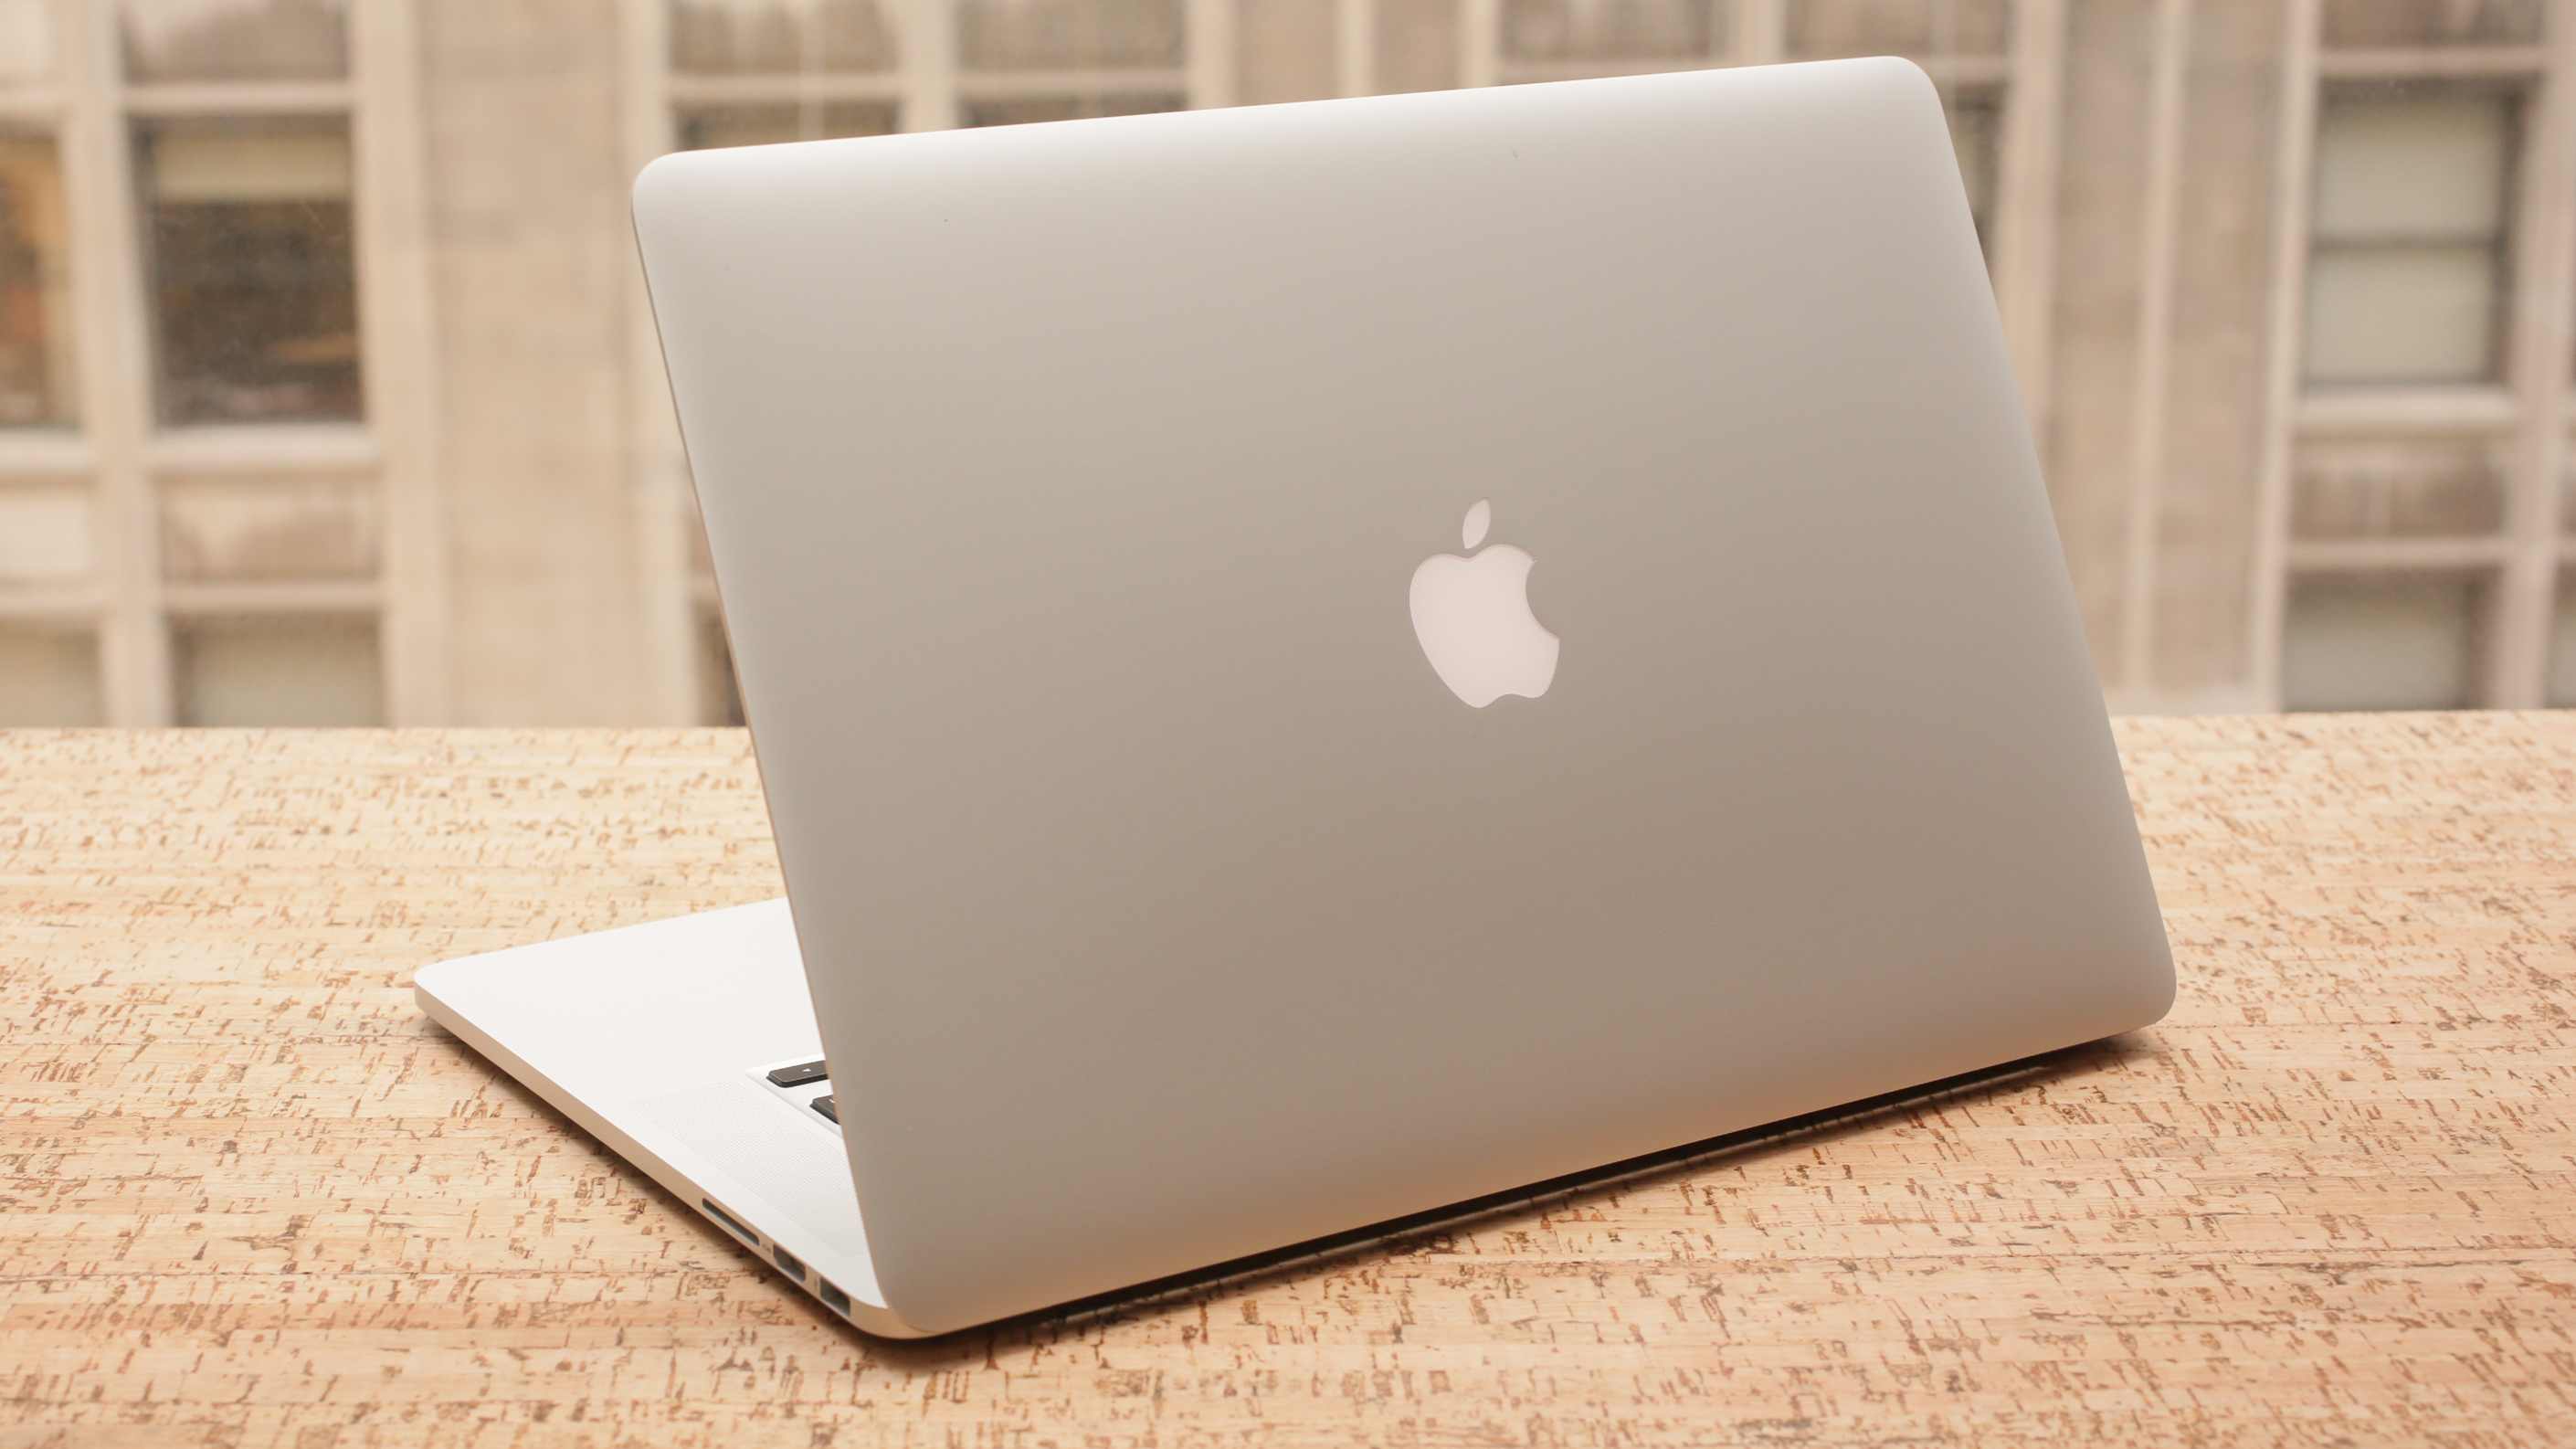 Apple MacBook Pro (15-inch, 2015) review: Old-school MacBook Pro